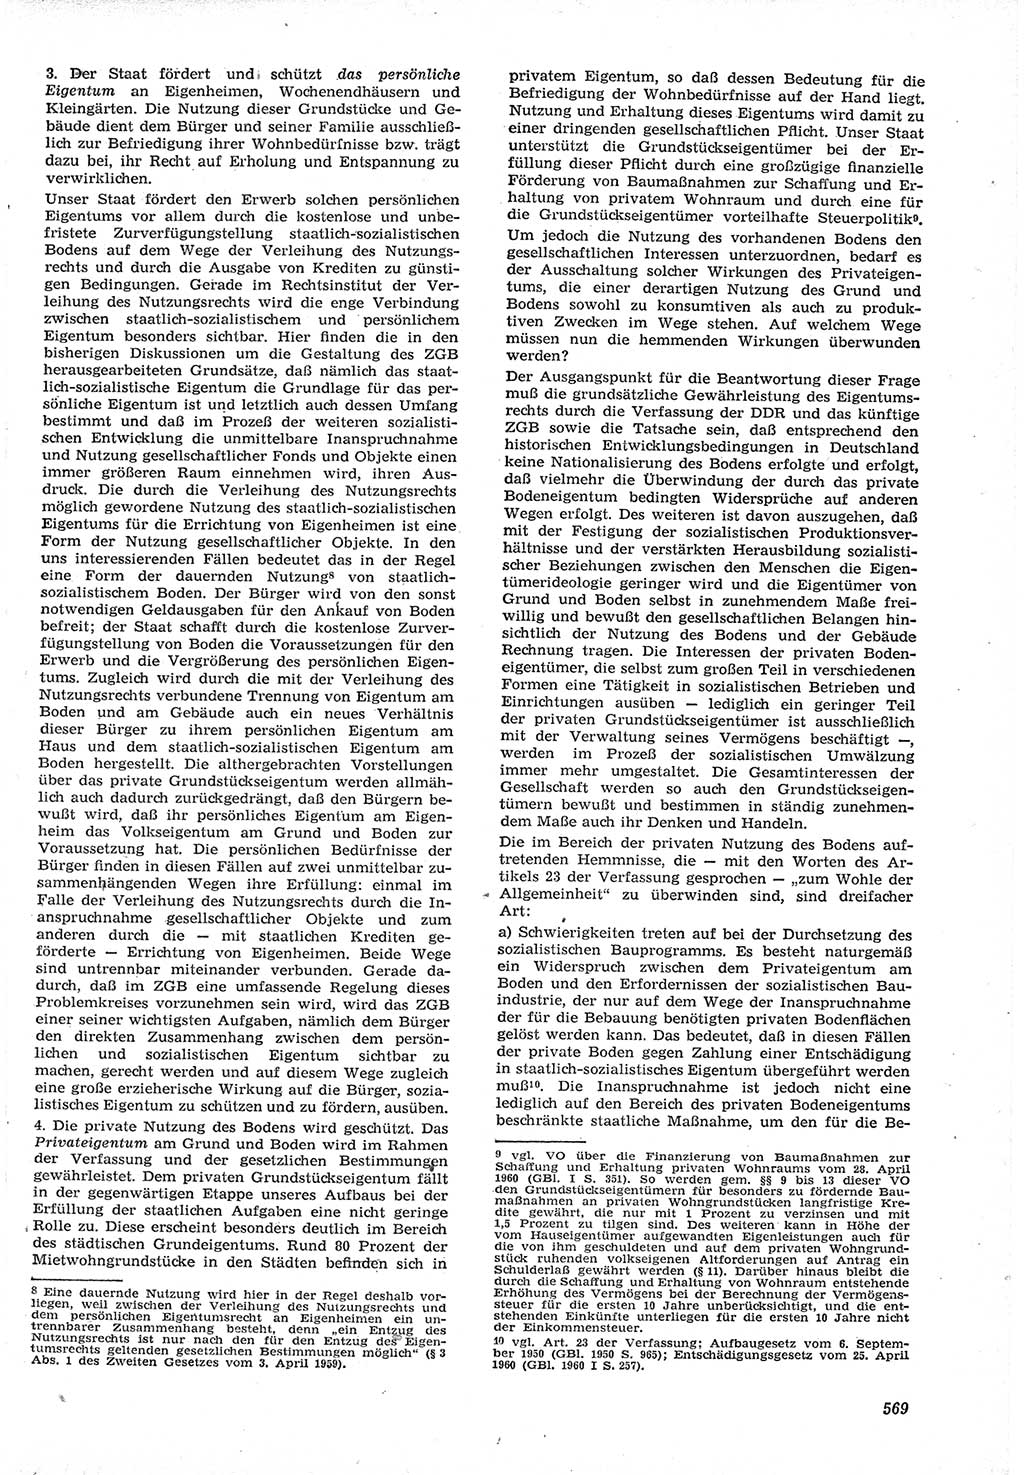 Neue Justiz (NJ), Zeitschrift für Recht und Rechtswissenschaft [Deutsche Demokratische Republik (DDR)], 15. Jahrgang 1961, Seite 569 (NJ DDR 1961, S. 569)